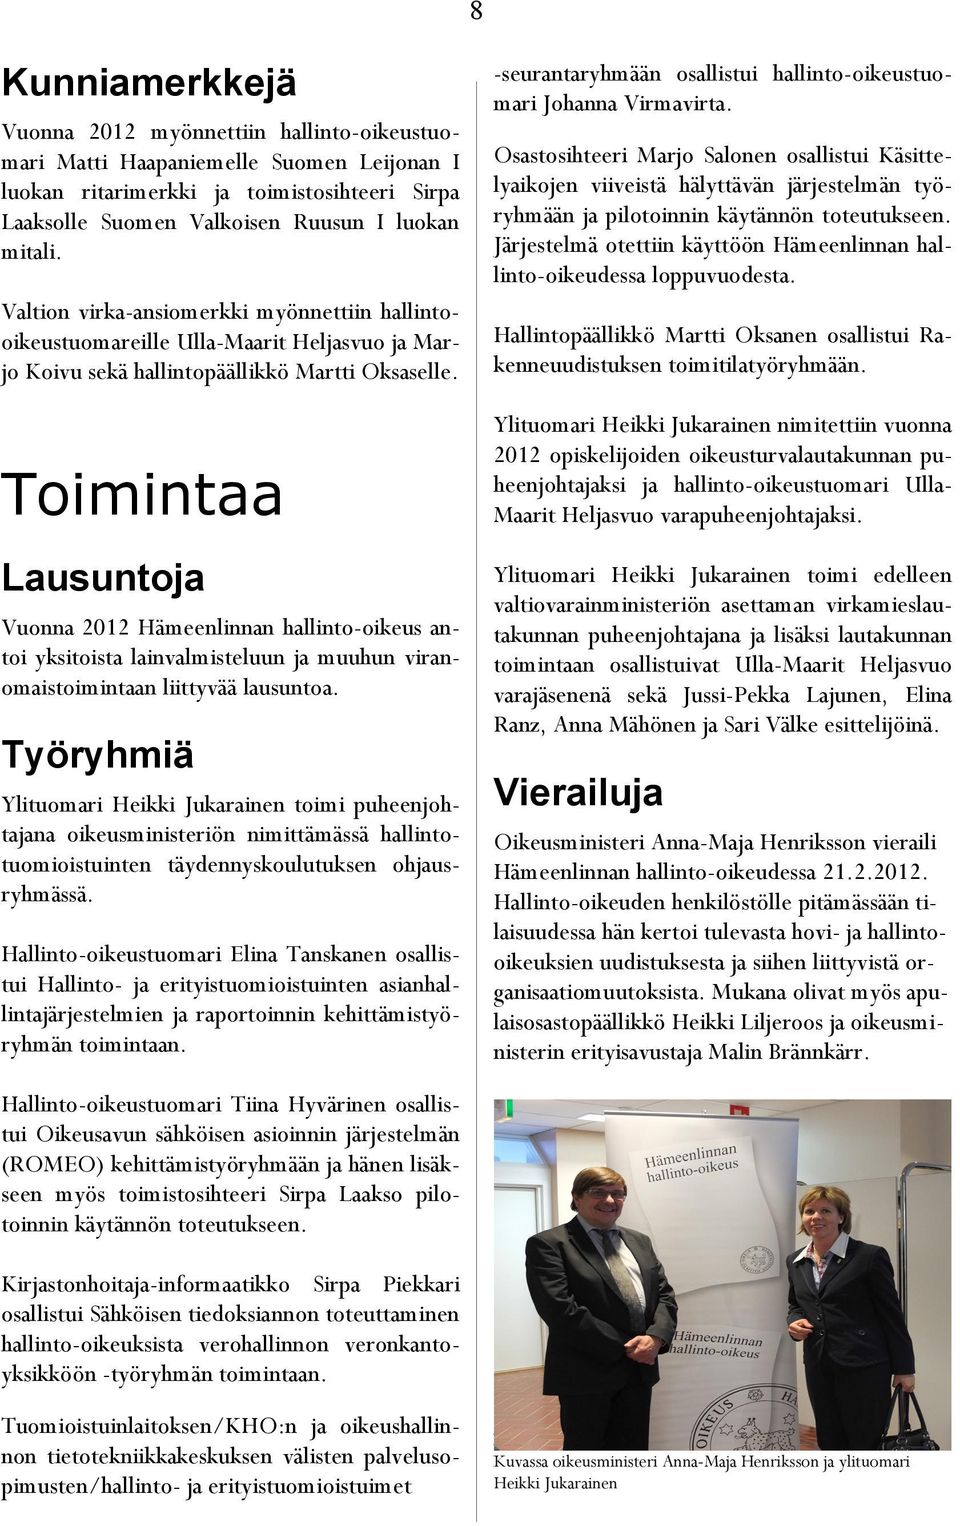 Toimintaa Lausuntoja Vuonna 2012 Hämeenlinnan hallinto-oikeus antoi yksitoista lainvalmisteluun ja muuhun viranomaistoimintaan liittyvää lausuntoa.